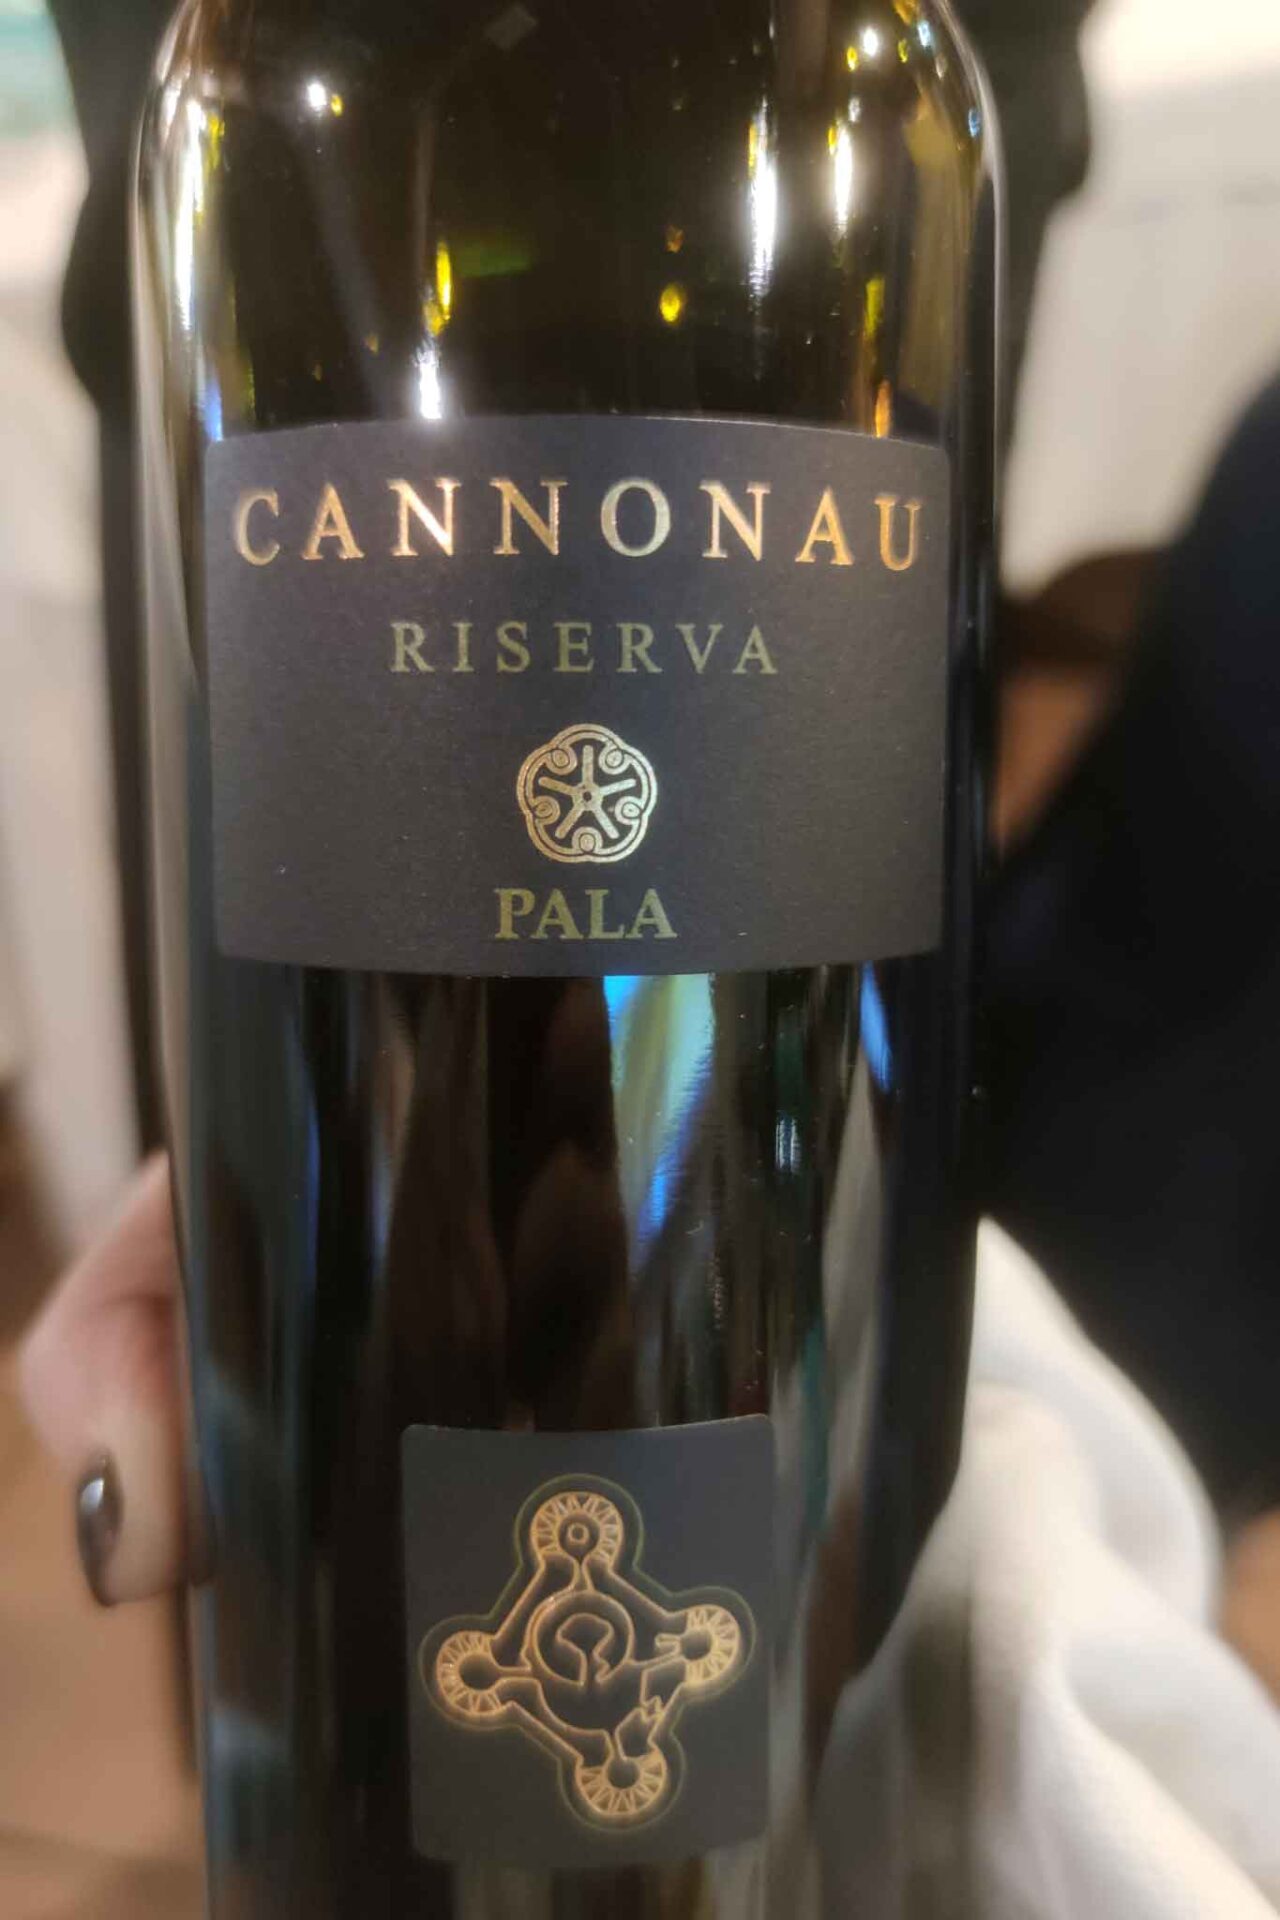 Cannonau Pala Riserva